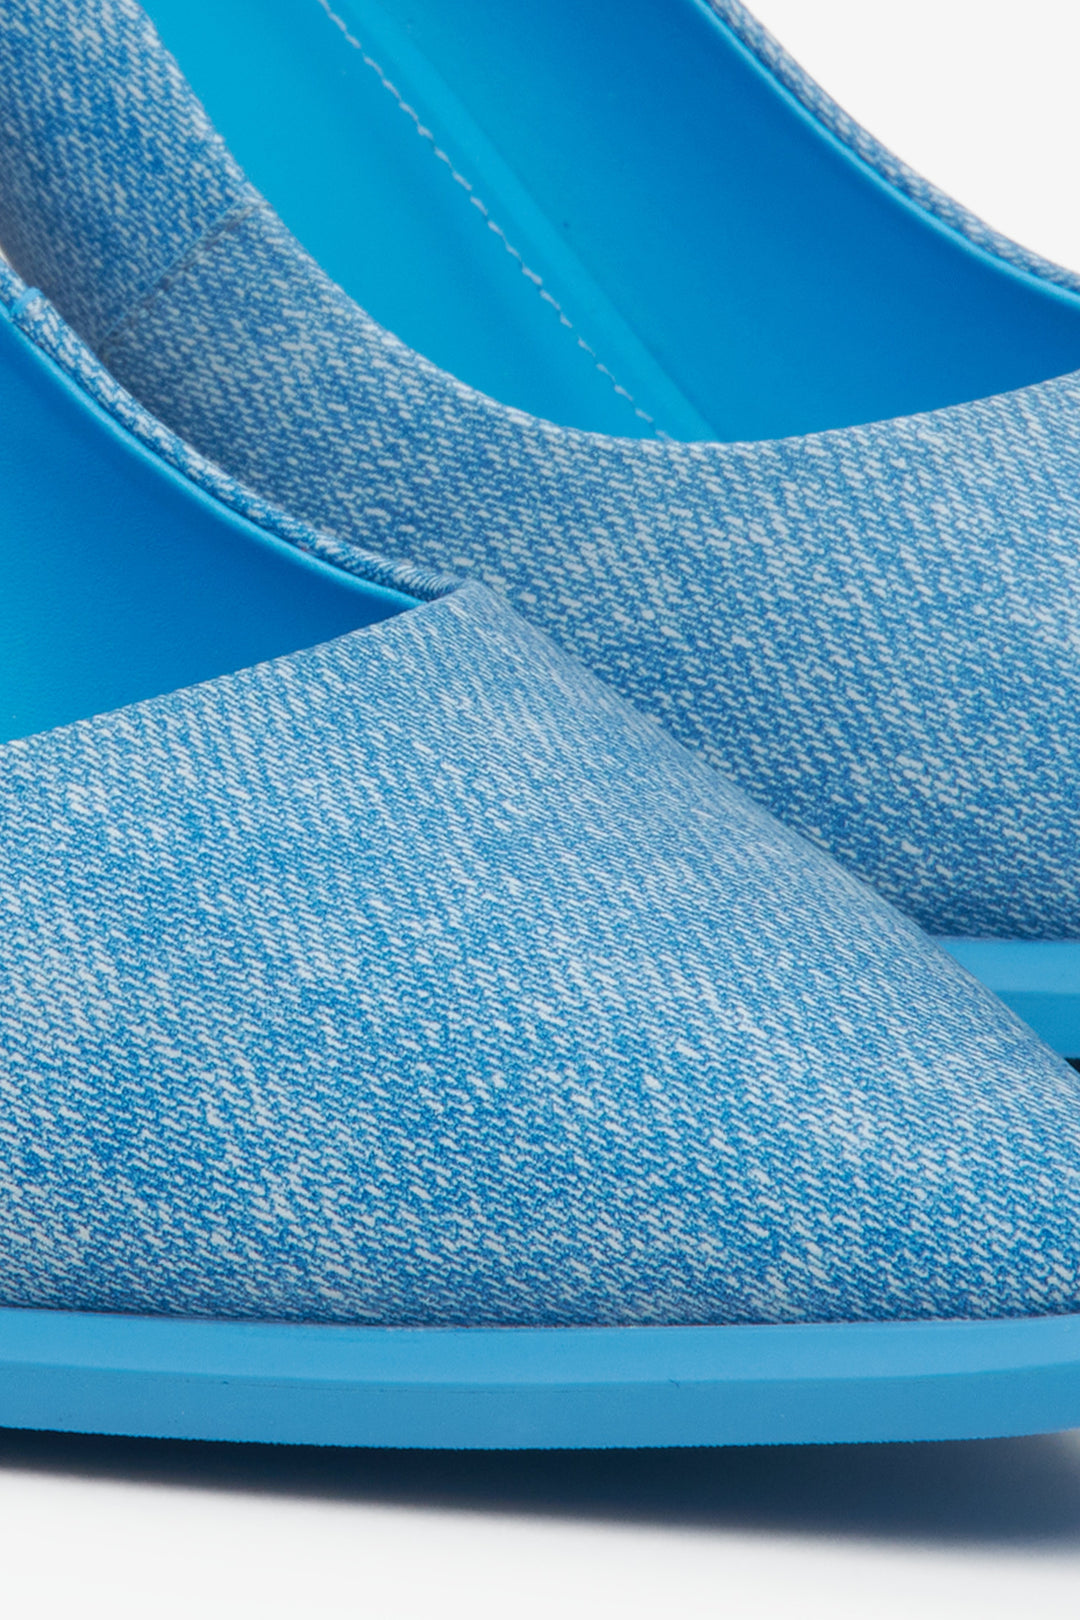 Jeansowe teksturowane szpilki damskie Estro w kolorze niebieskim - zbliżenie na detal.